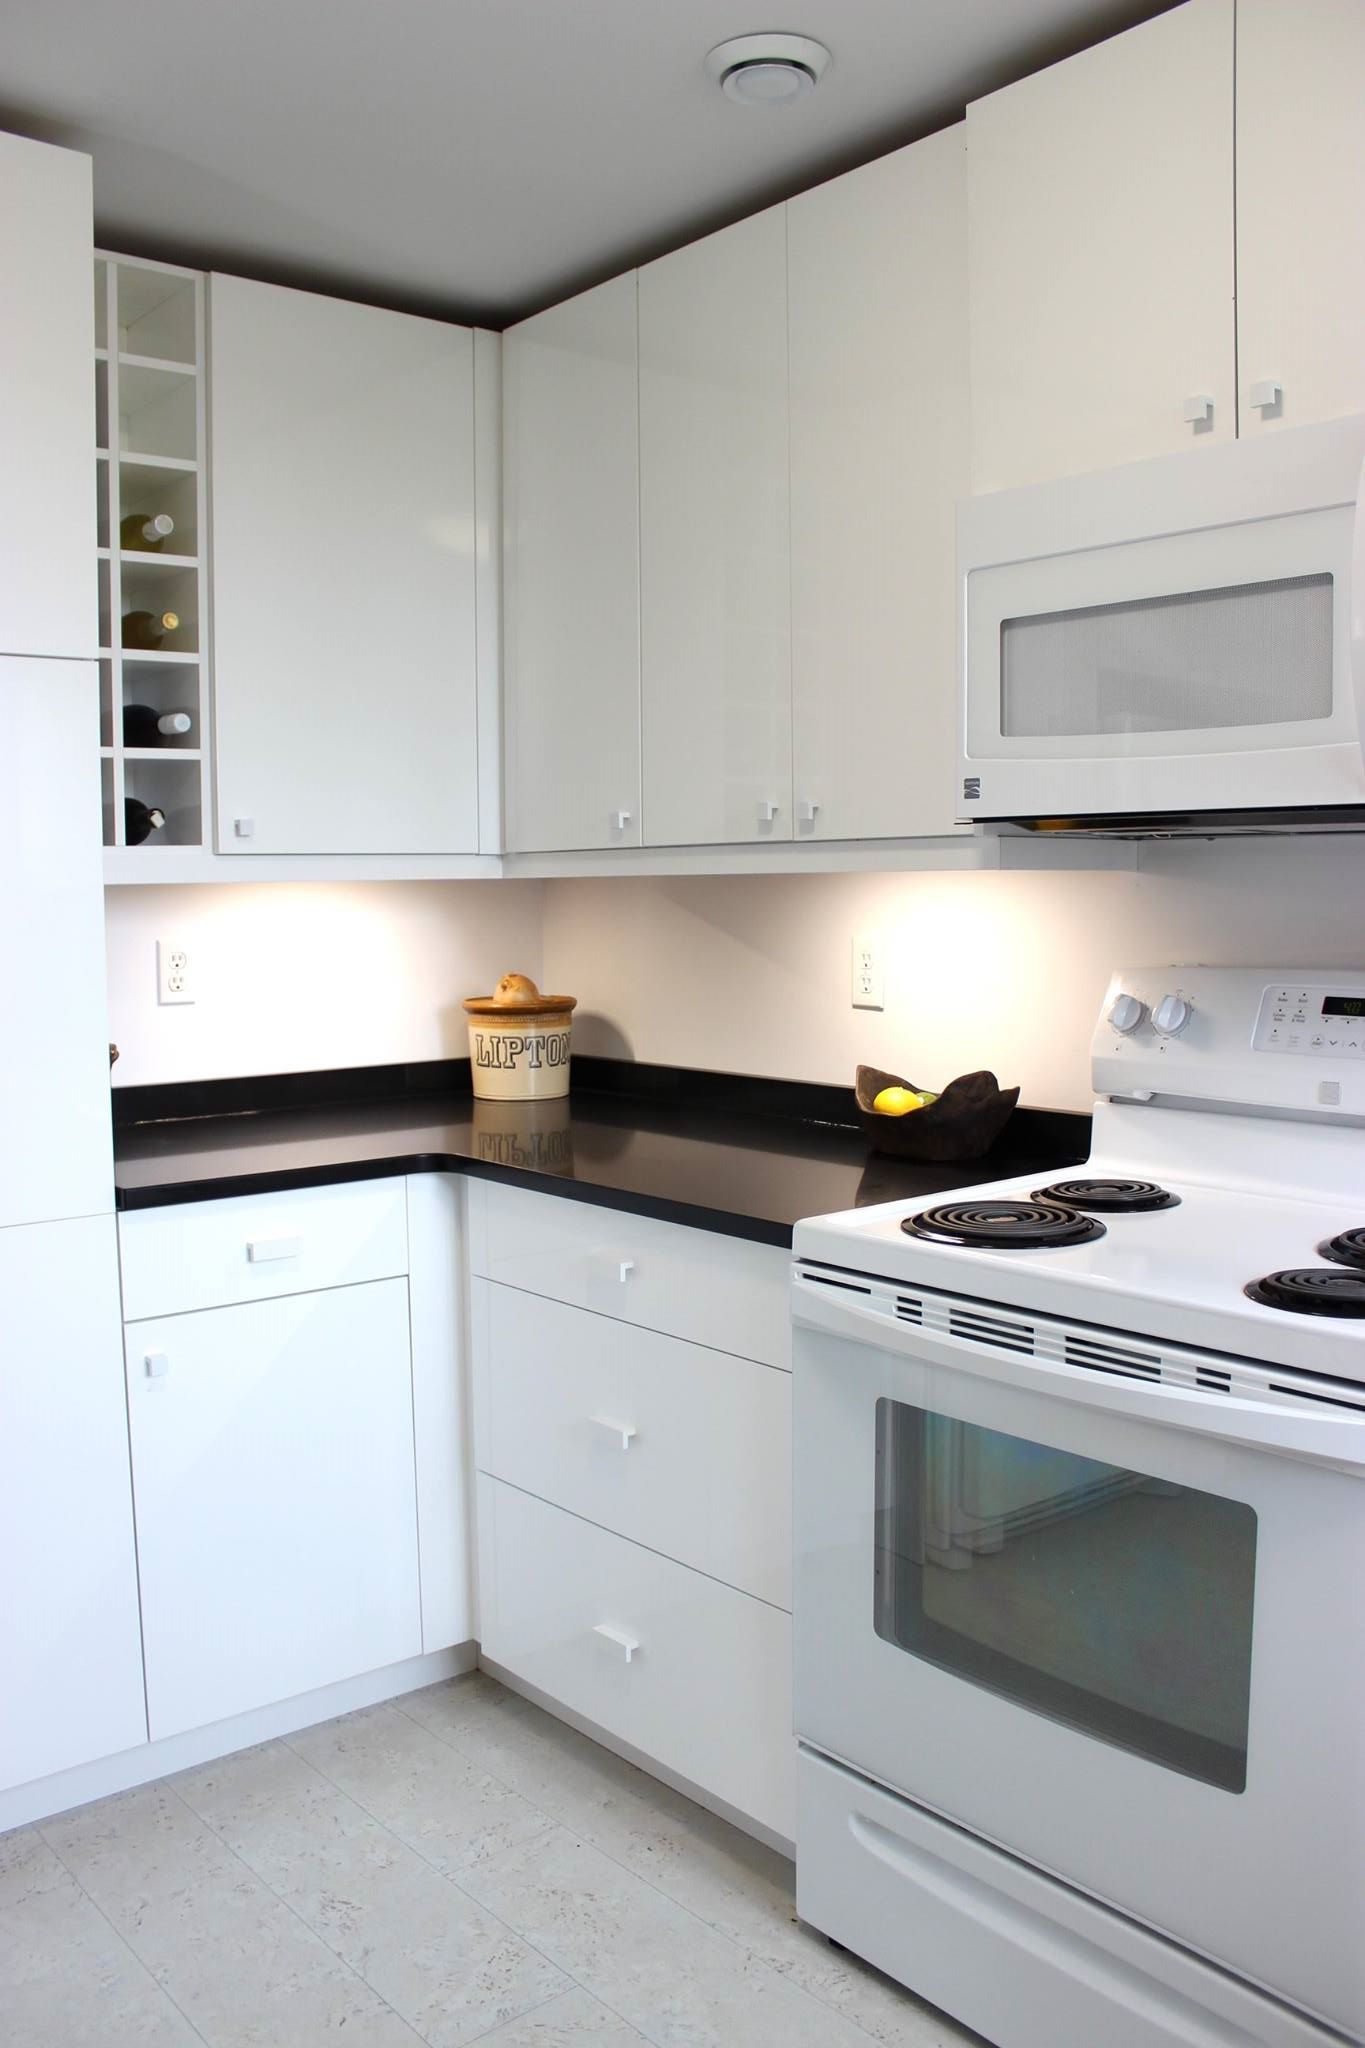 Kitchen Cabinet Companies Halifax Ns : Kitchen Refacing Ideas When